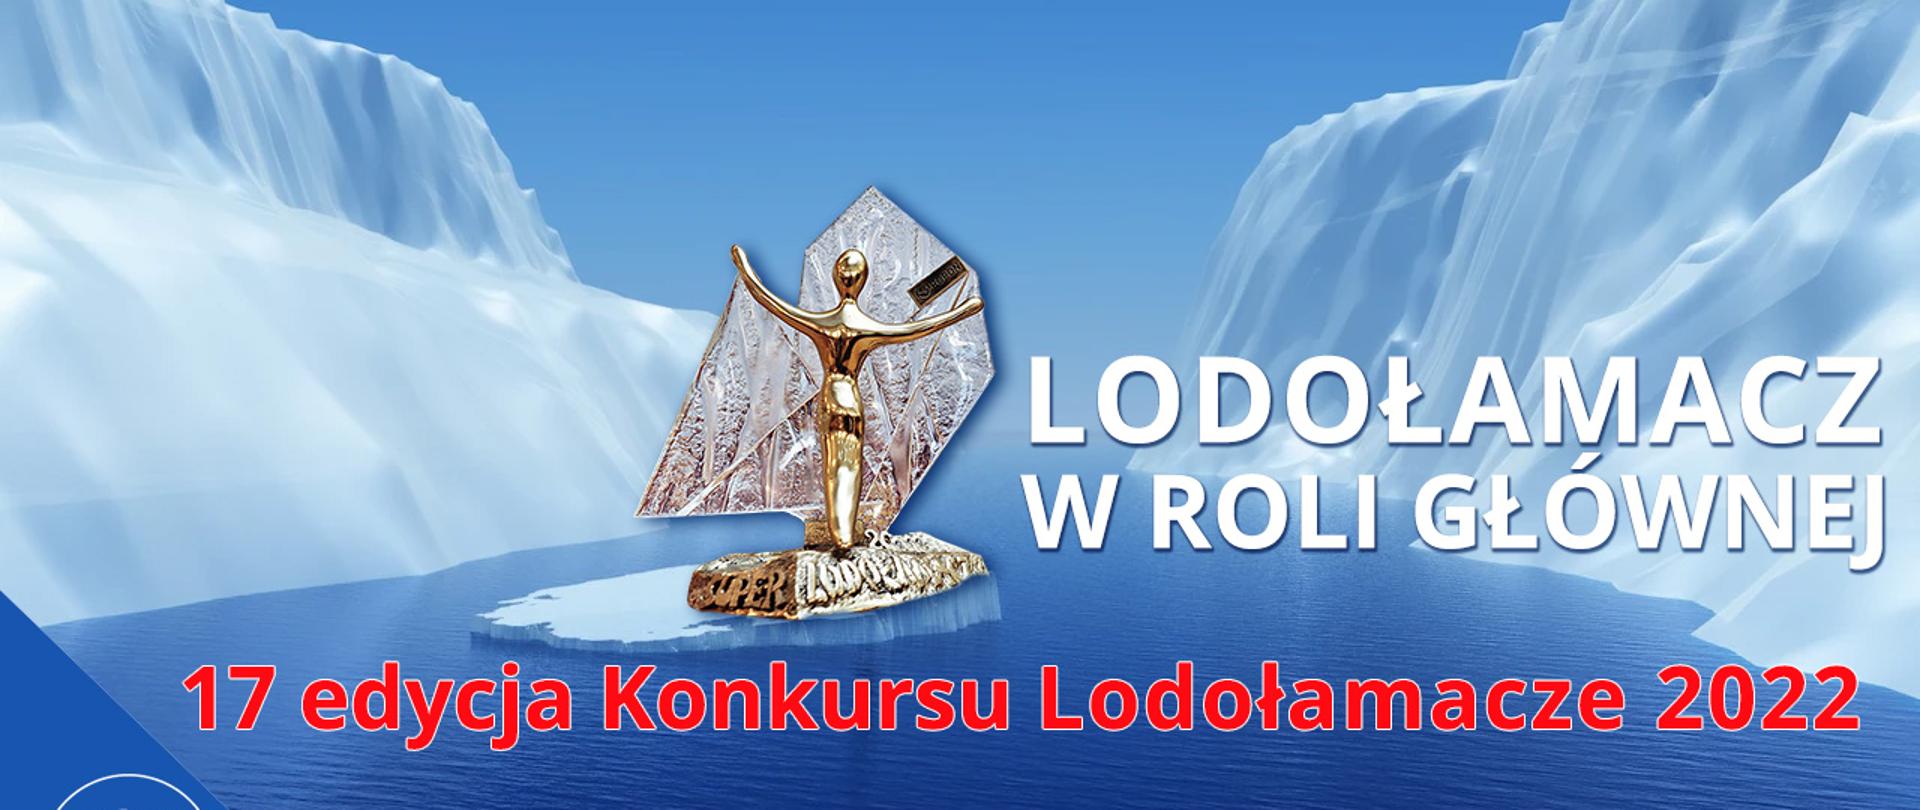 XVII edycja konkursu "Lodołamacze"